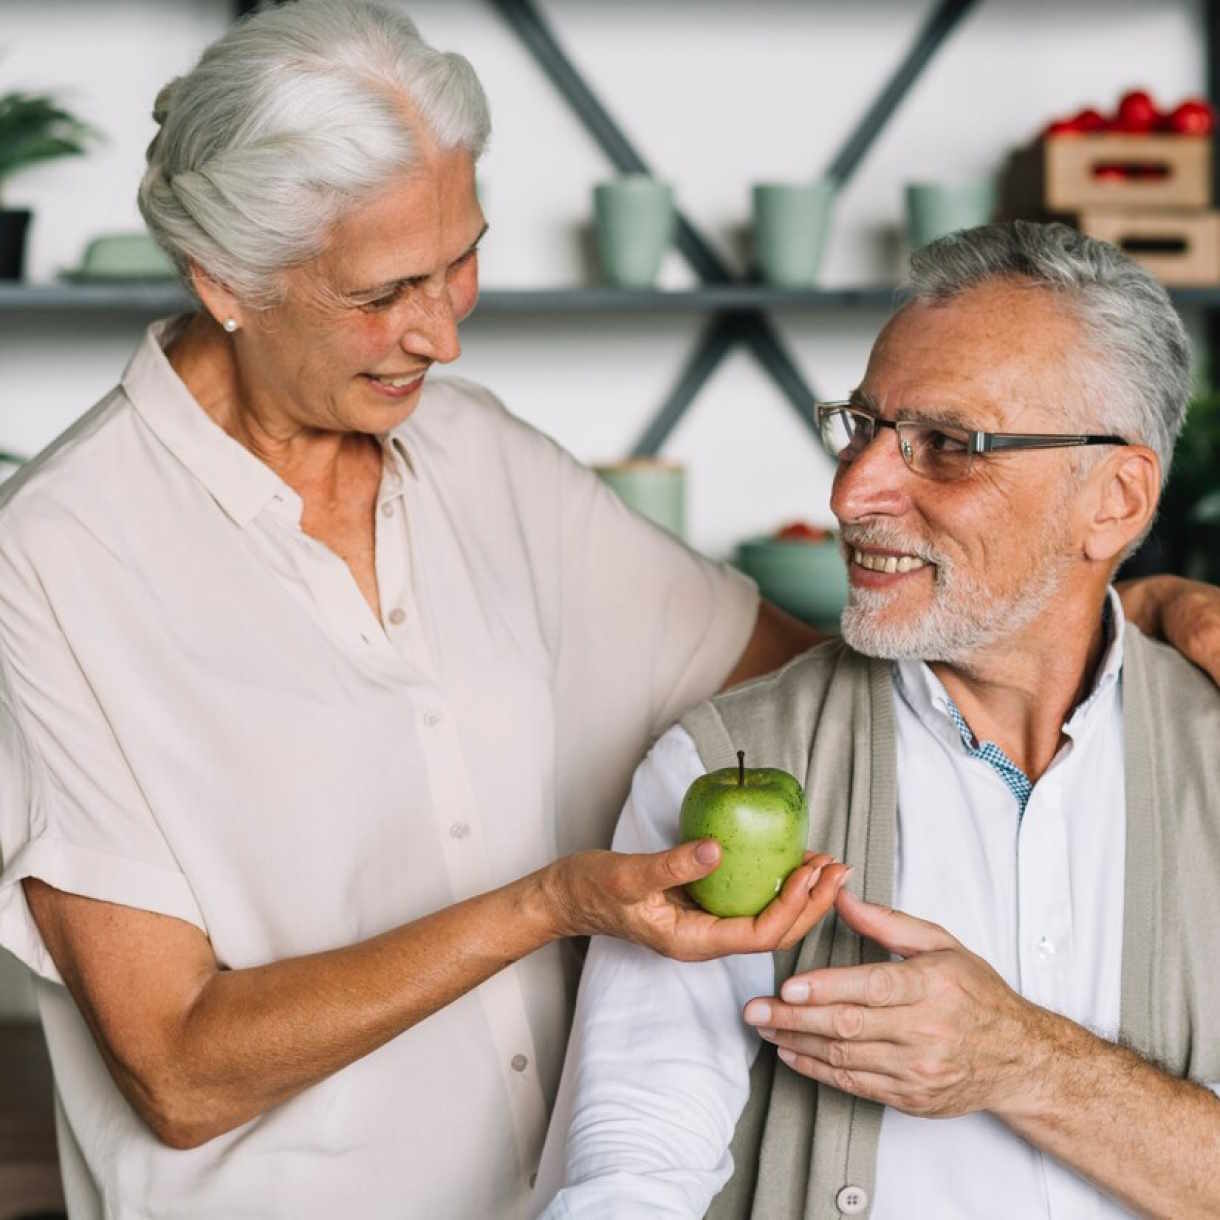 Foto zeigt eine Frau, die einem Mann einen Apfel reicht. Das steht als Sinnbild für die Hilfe im Alter, die man durch eine Rürup Rente erhält.